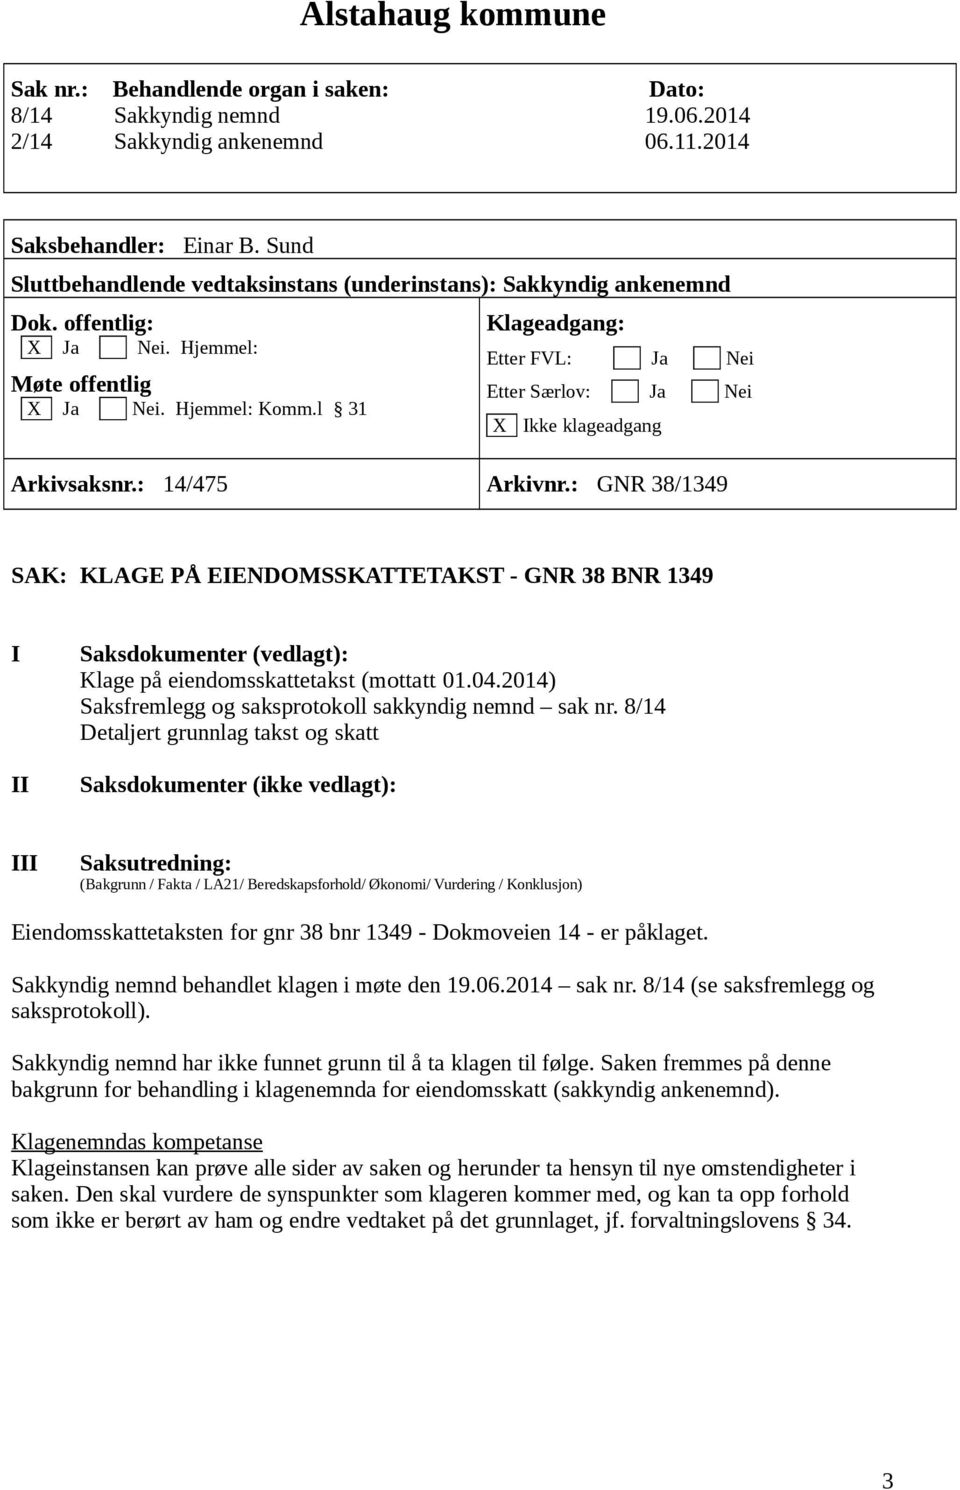 8/14 Eiendomsskattetaksten for gnr 38 bnr 1349 - Dokmoveien 14 - er påklaget. Sakkyndig nemnd behandlet klagen i møte den 19.06.2014 sak nr. 8/14 (se saksfremlegg og saksprotokoll).